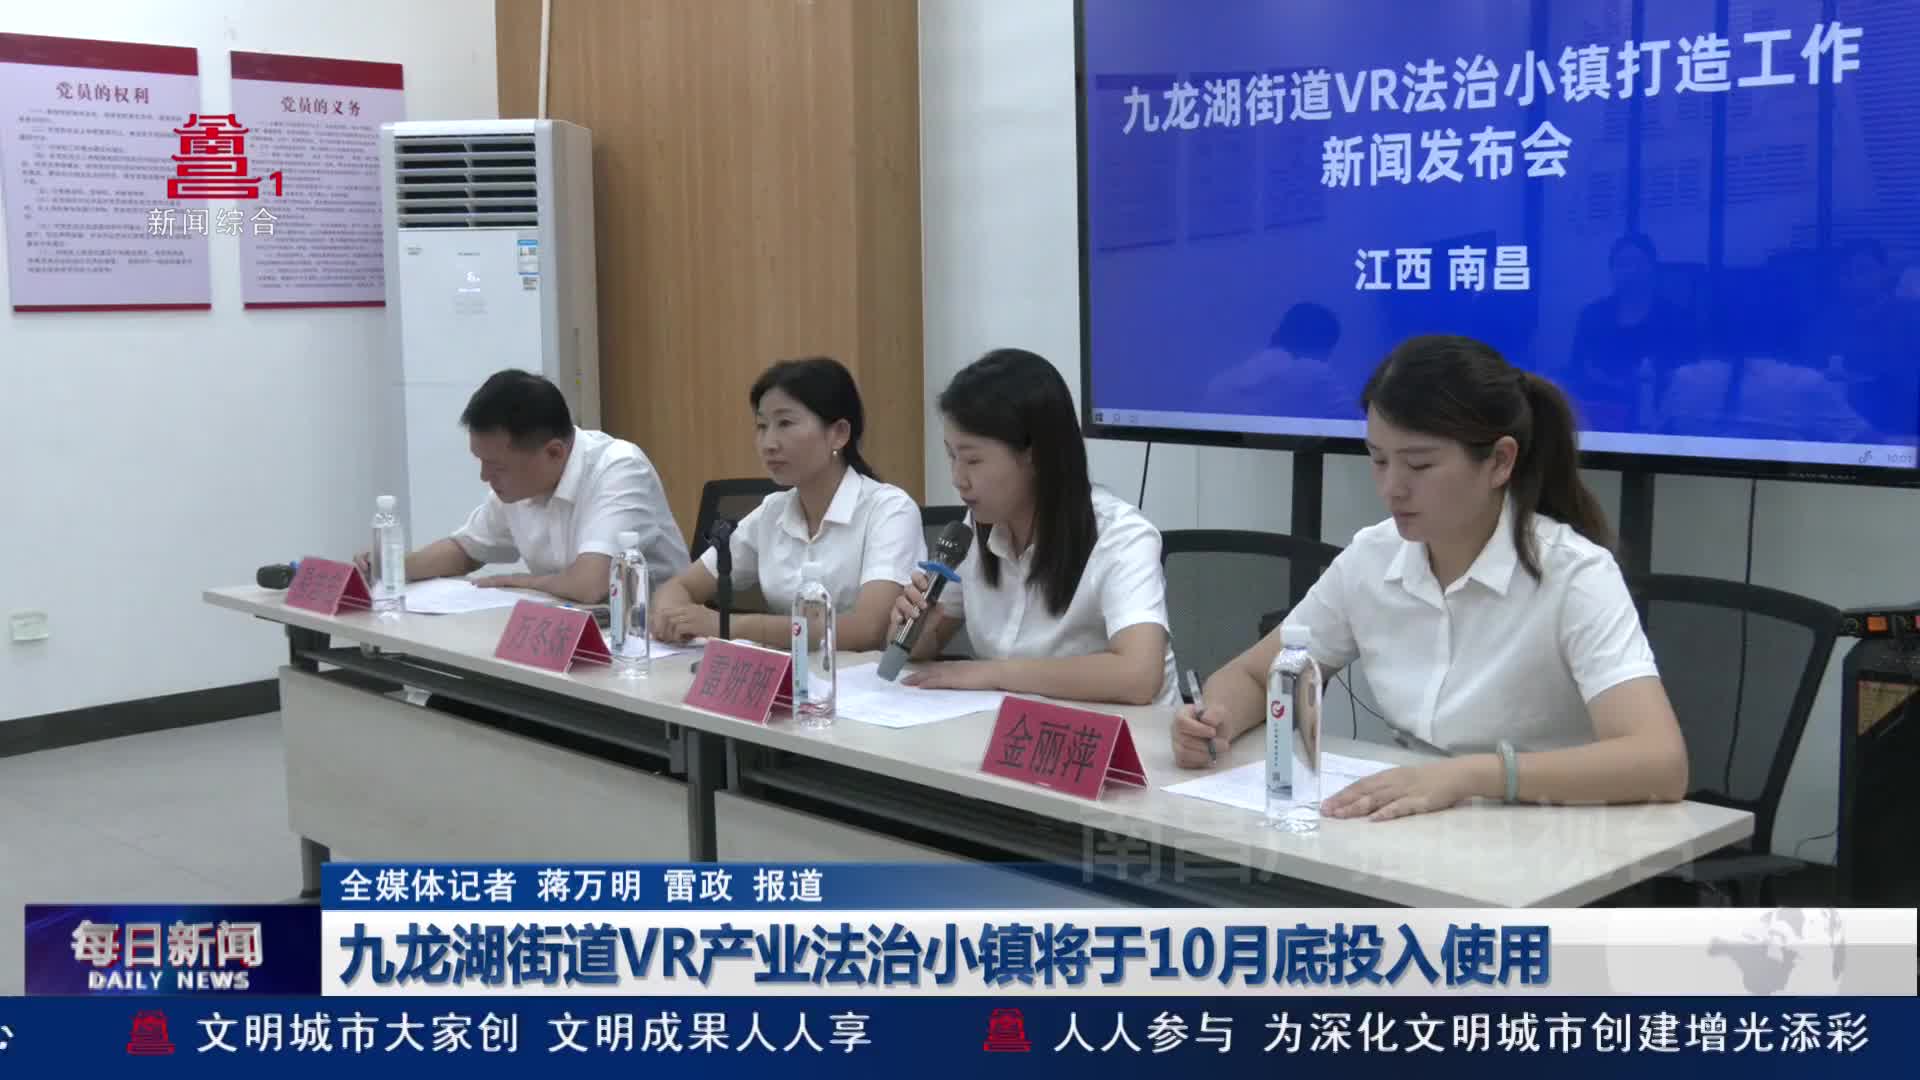 九龙湖街道VR产业法治小镇将于10月底投入使用